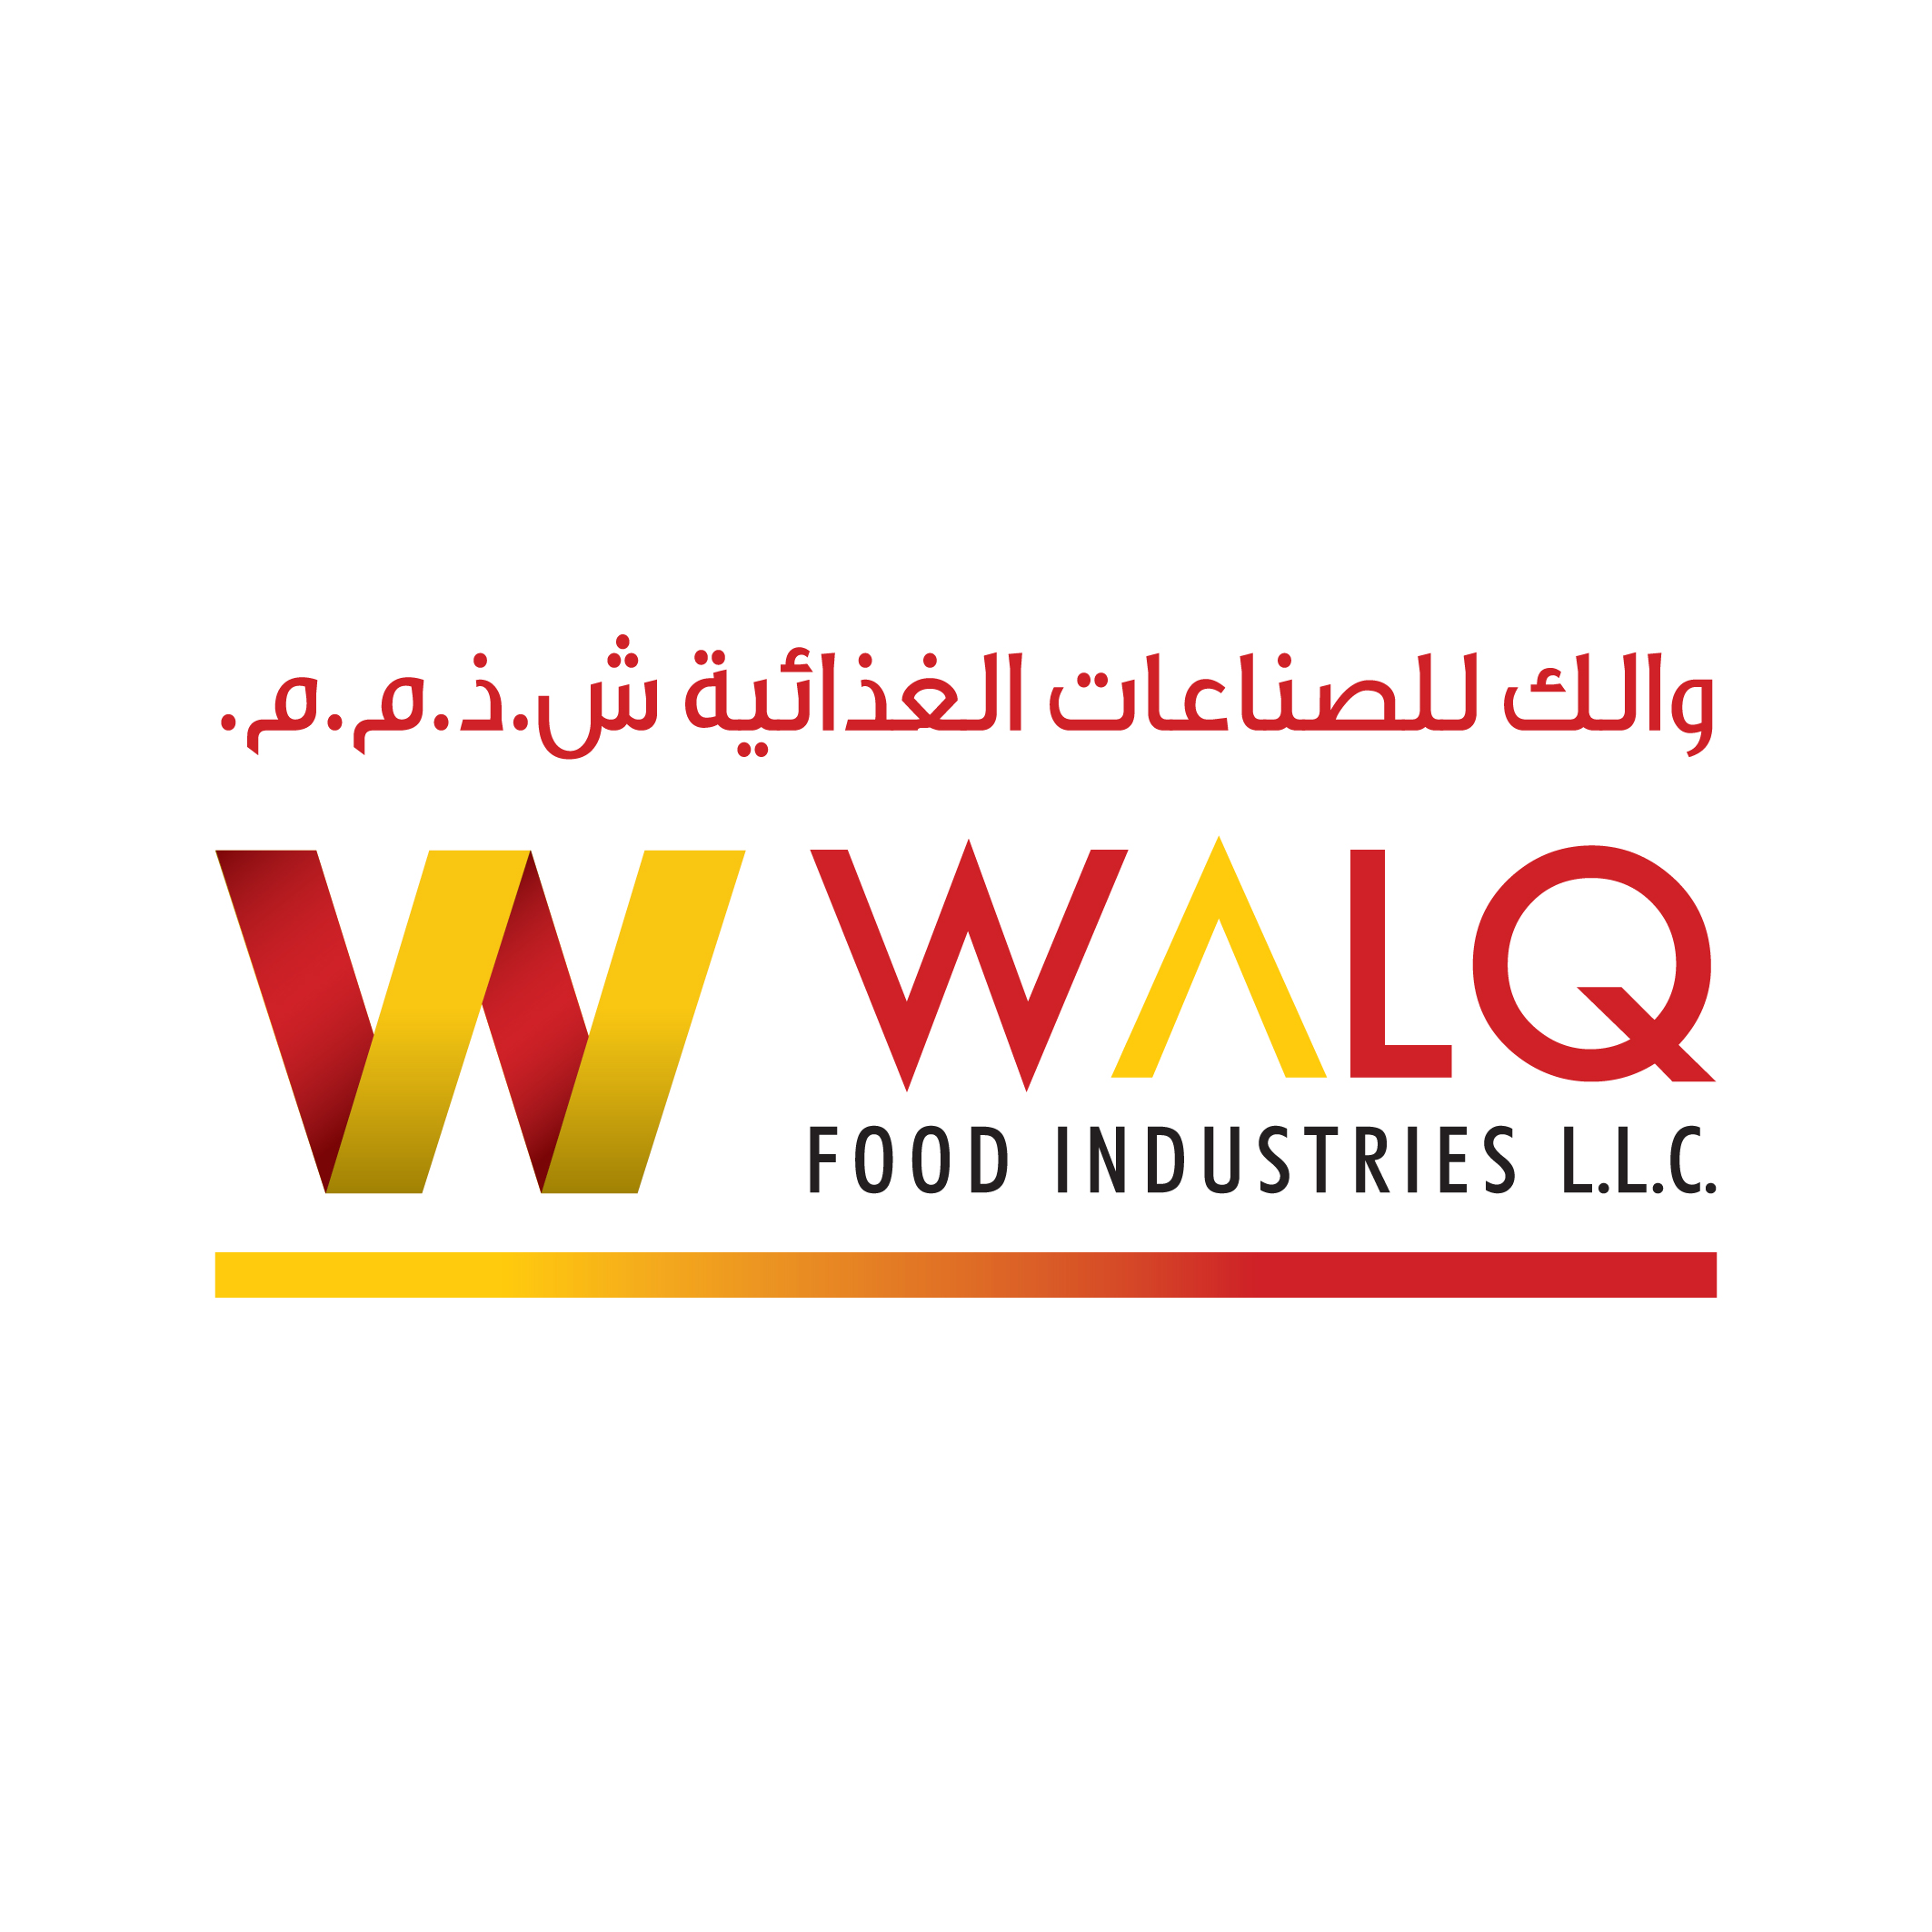 Walq Food